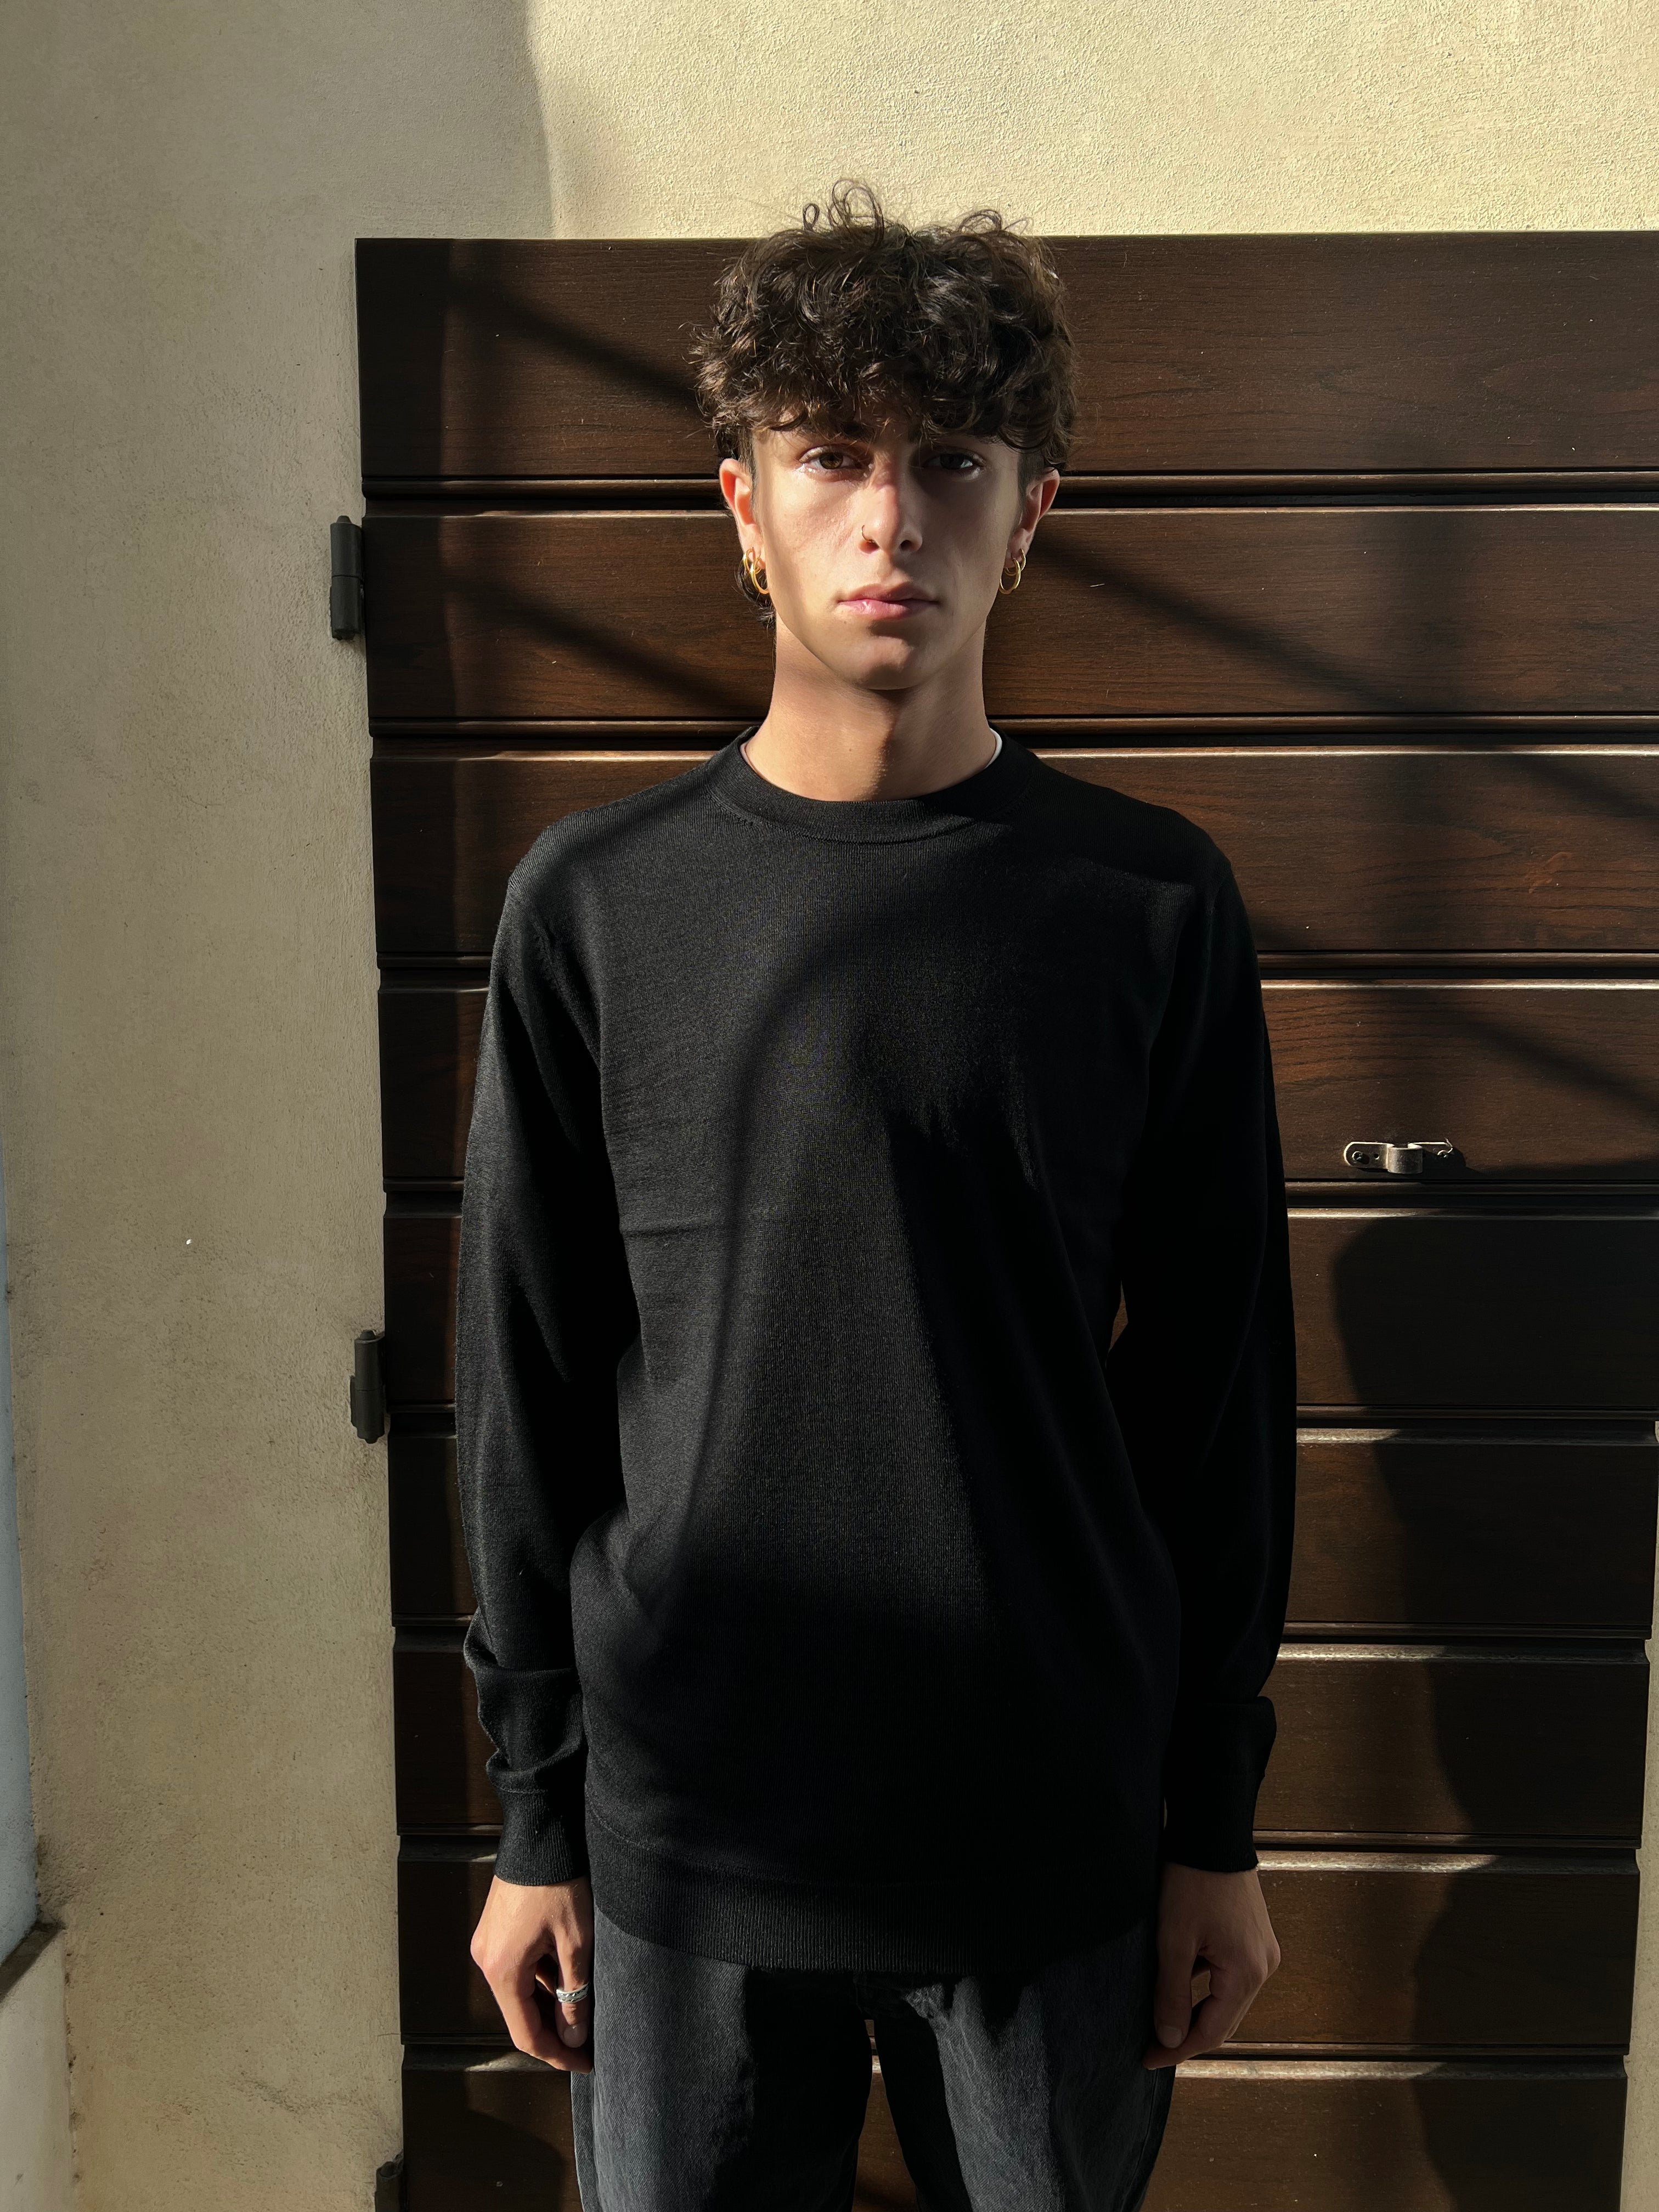 Town Merino Sweater Black